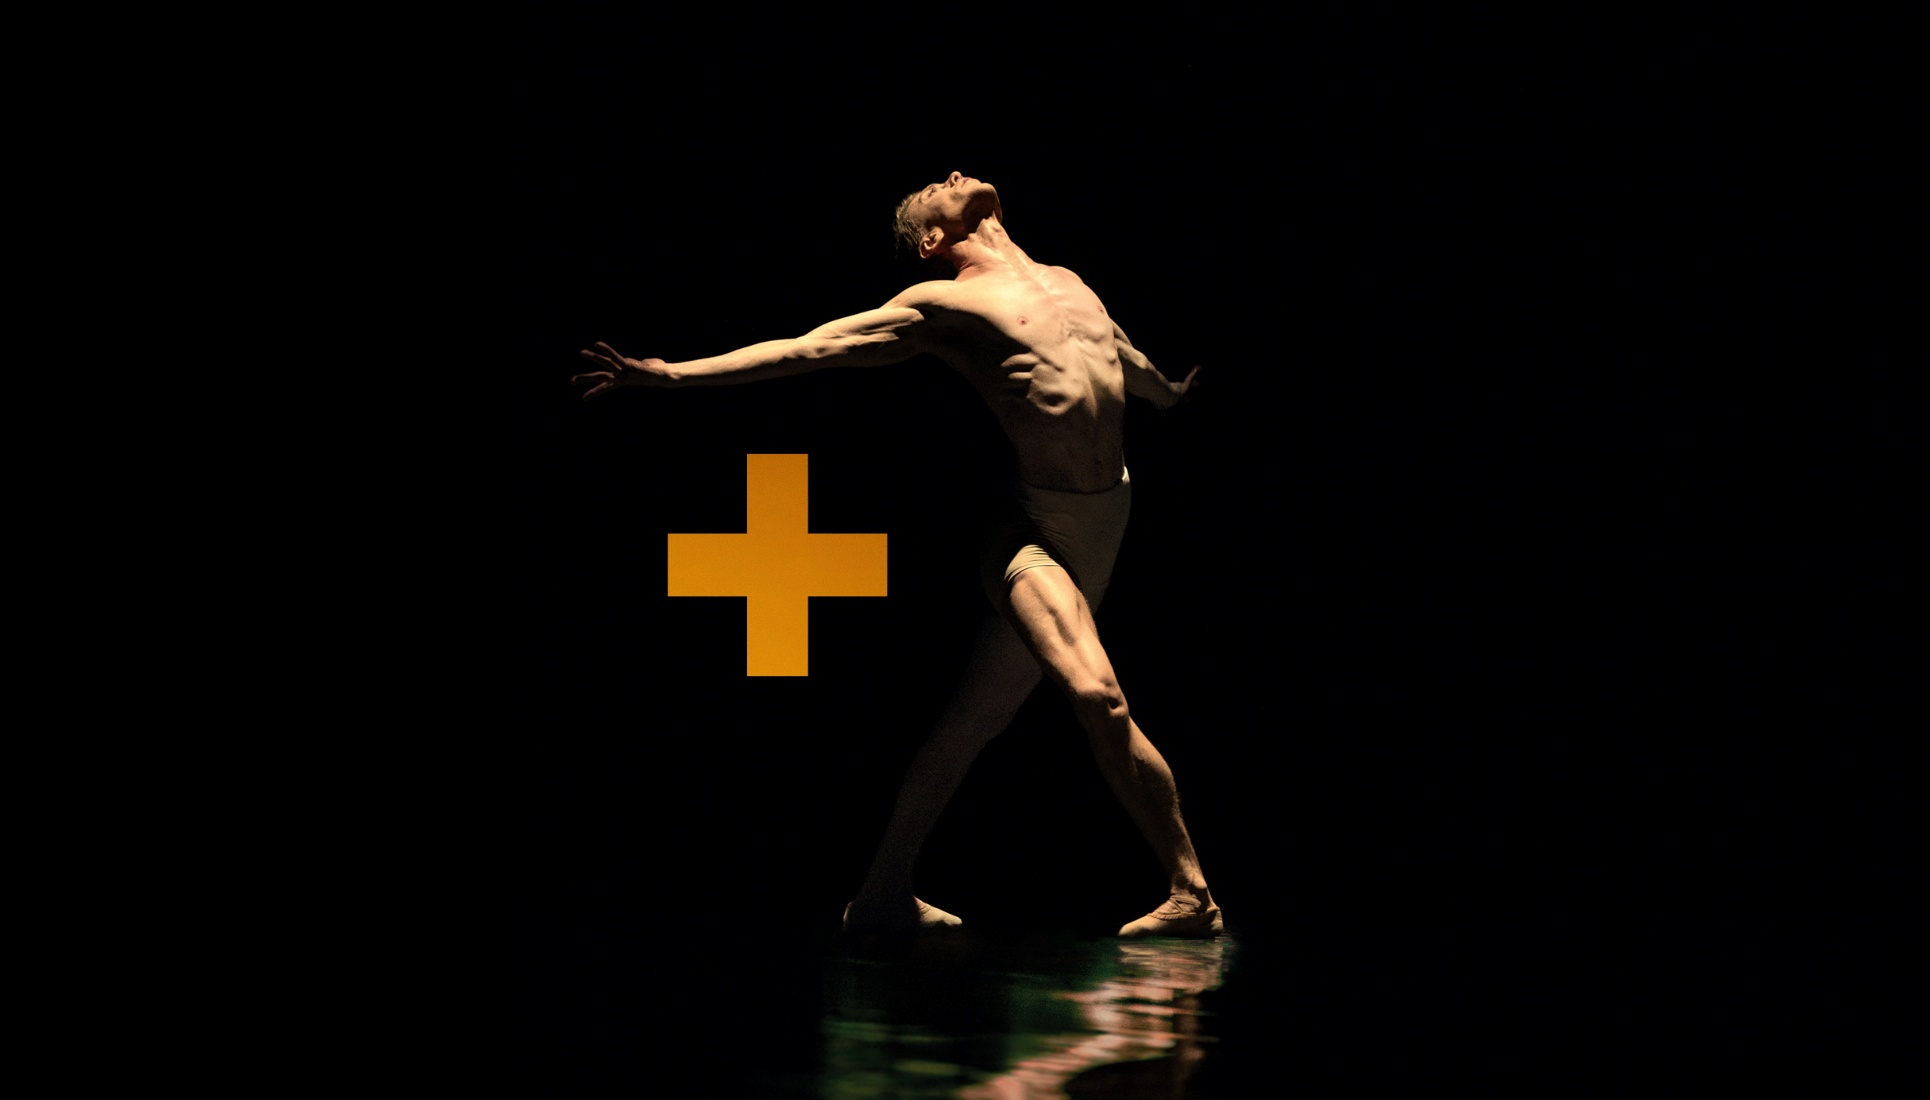 Tancerz w pozie na czarnym tle obok znaku graficznego plusa